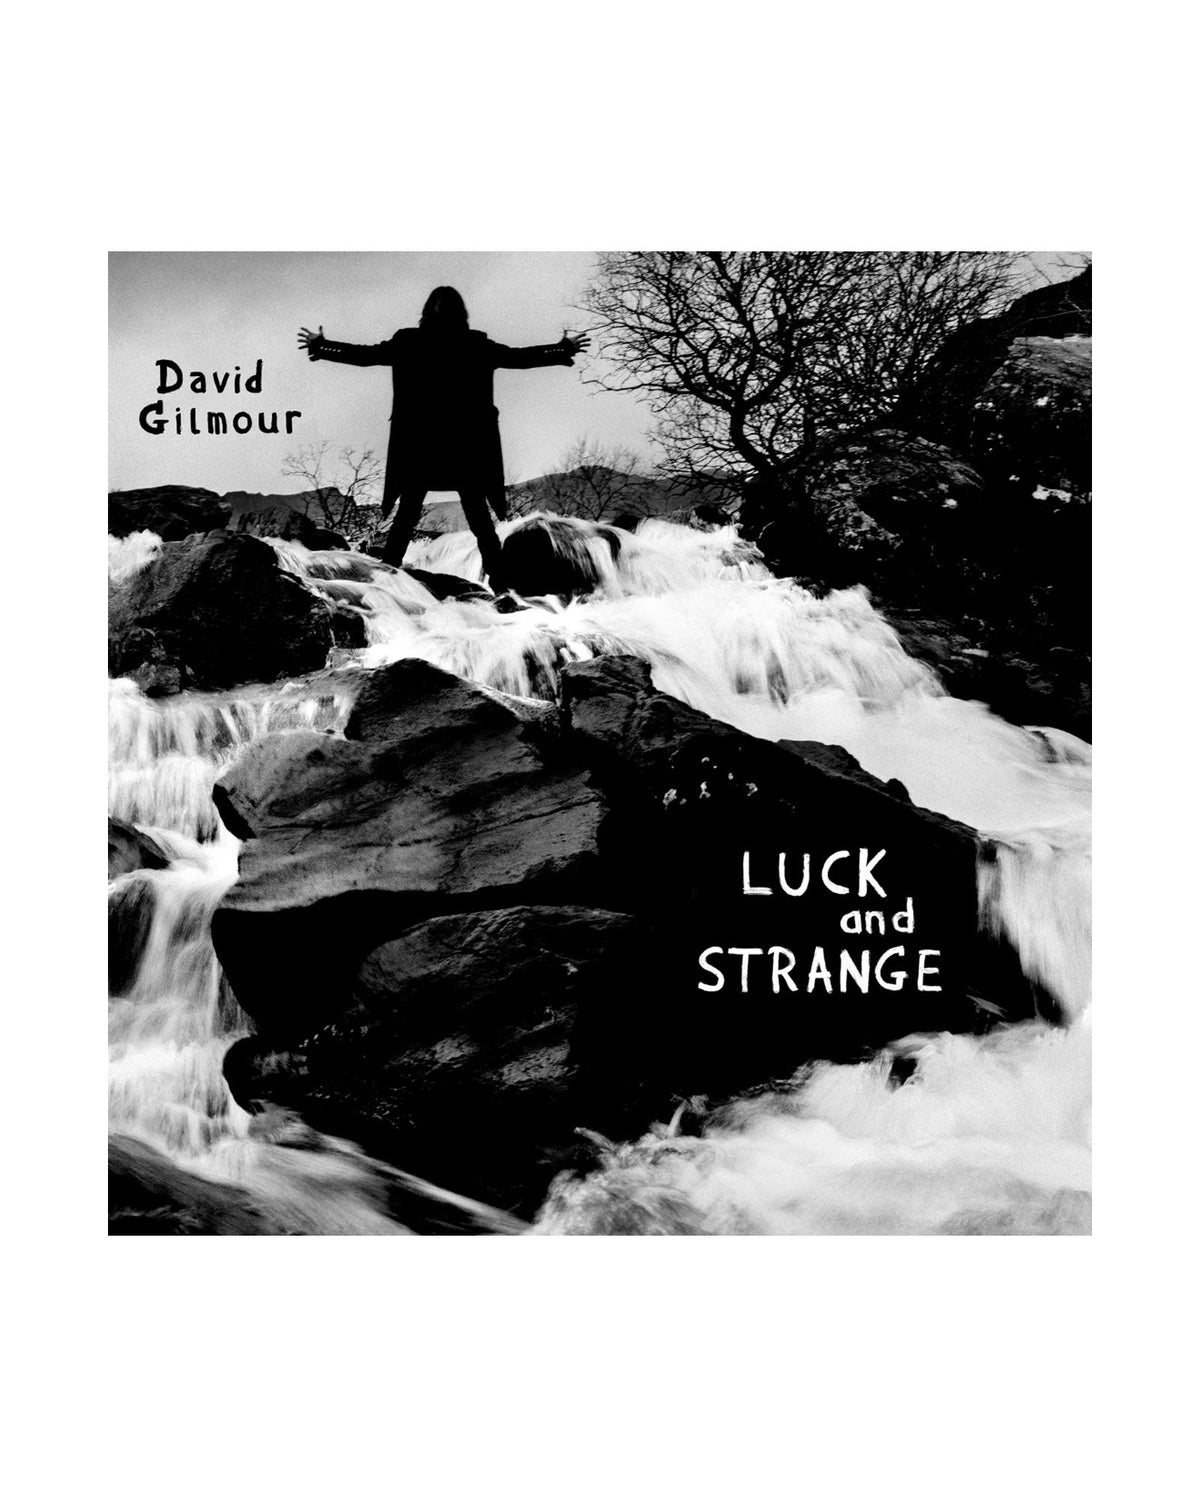 David Gilmour - LP Vinilo "Luck and Strange" (copia) - D2fy · Rocktud - Rocktud